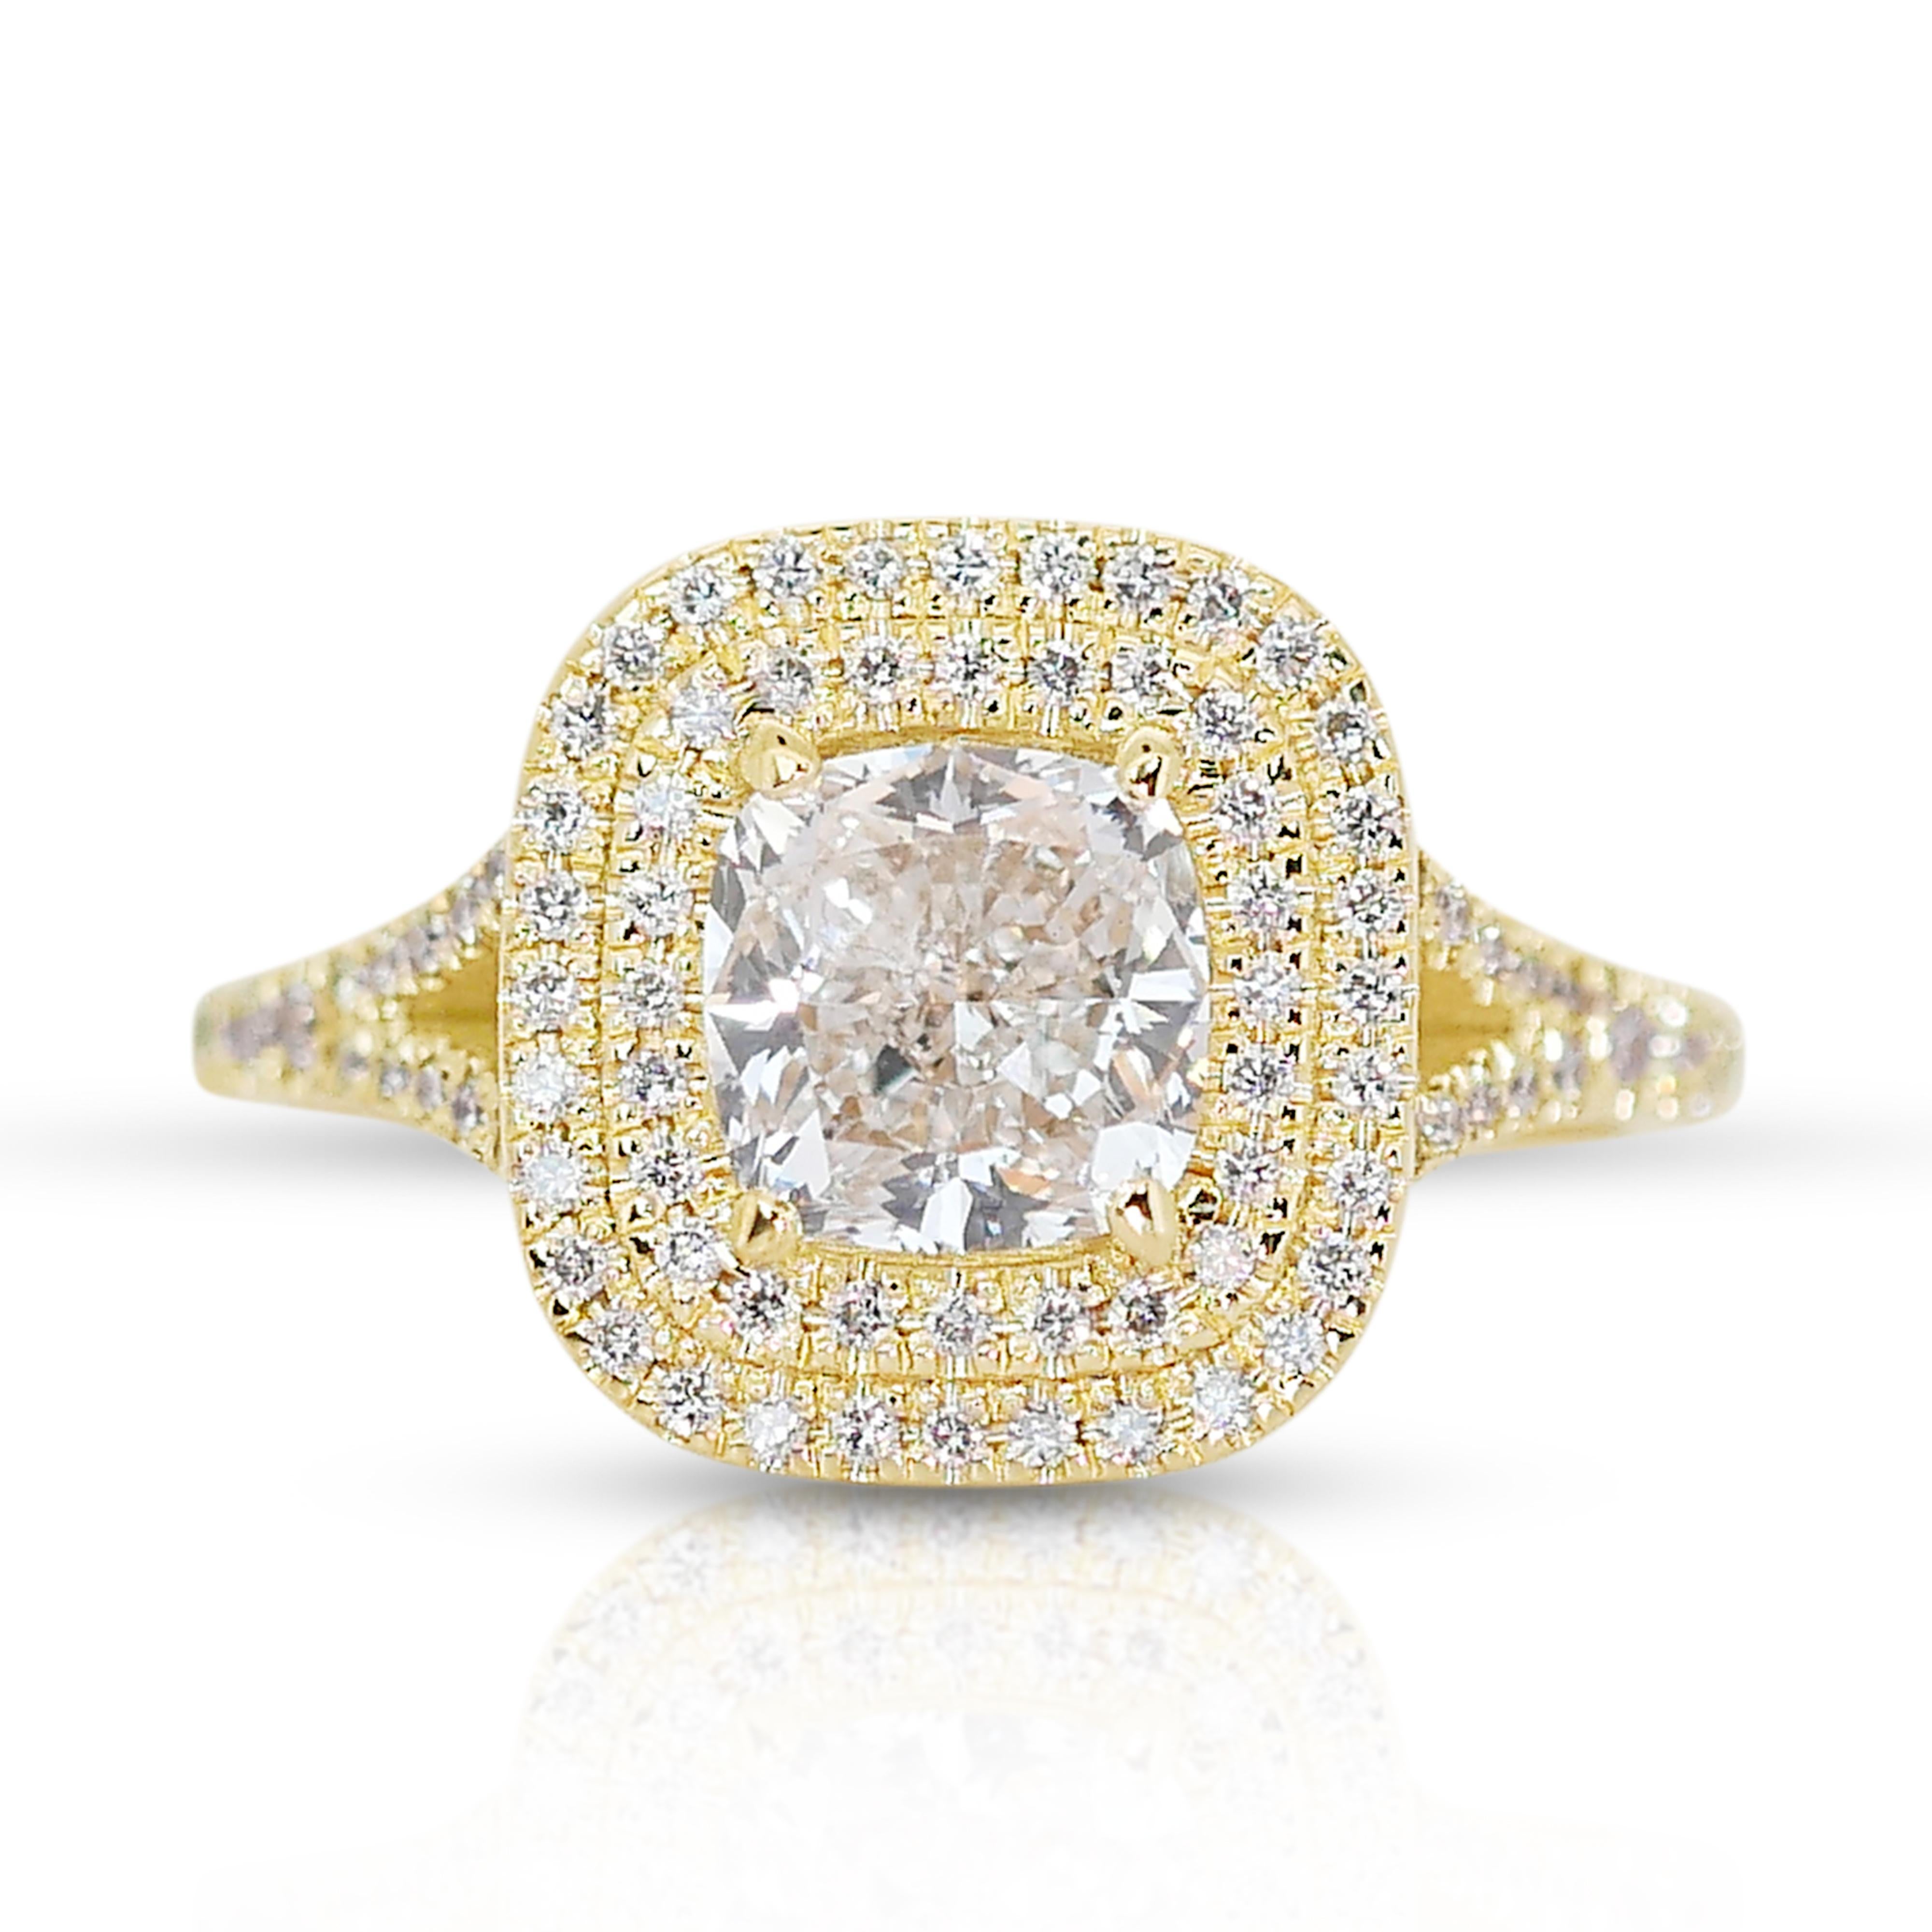 Radiant 18k Gelbgold Cushion Diamond Double Halo Ring w/1,82 ct - IGI zertifiziert

Erhöhen Sie Ihren Stil mit diesem doppelten Halo-Diamantring aus glänzendem 18-karätigem Gelbgold. Das Herzstück dieses atemberaubenden Schmuckstücks ist ein